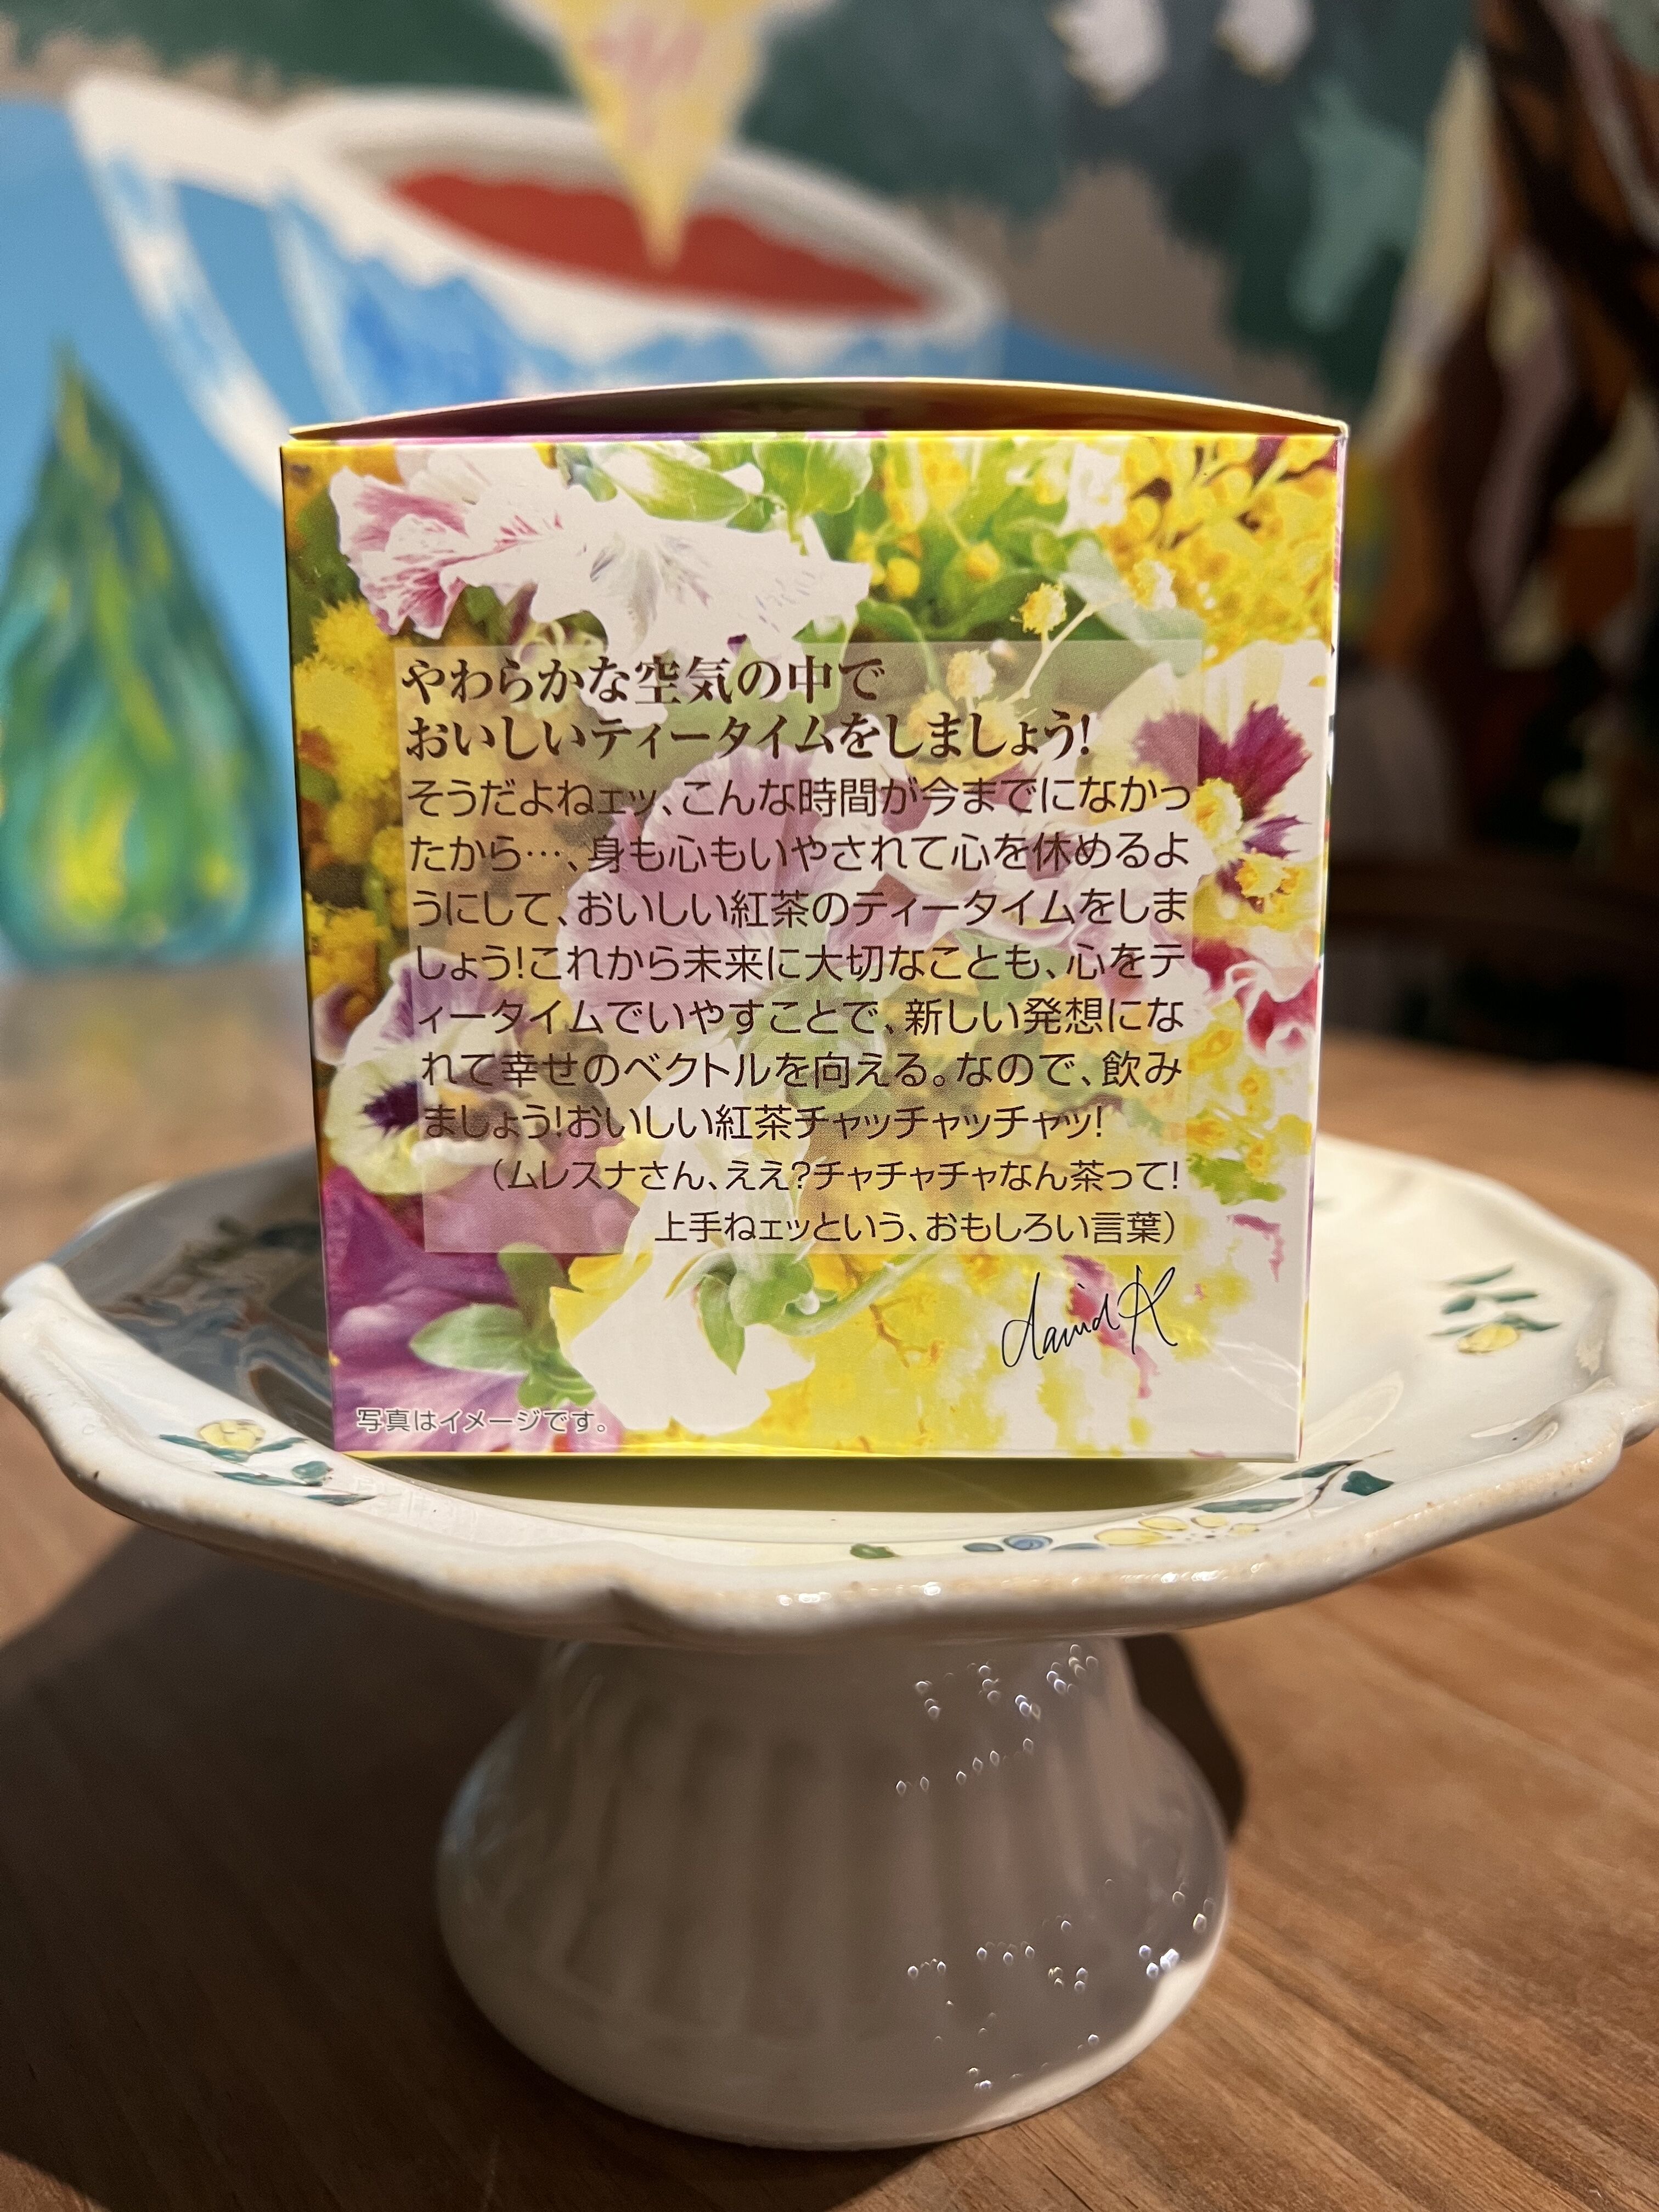 紅茶 ムレスナティー フルーティーベル 季節のご挨拶なのですのおいしい紅茶